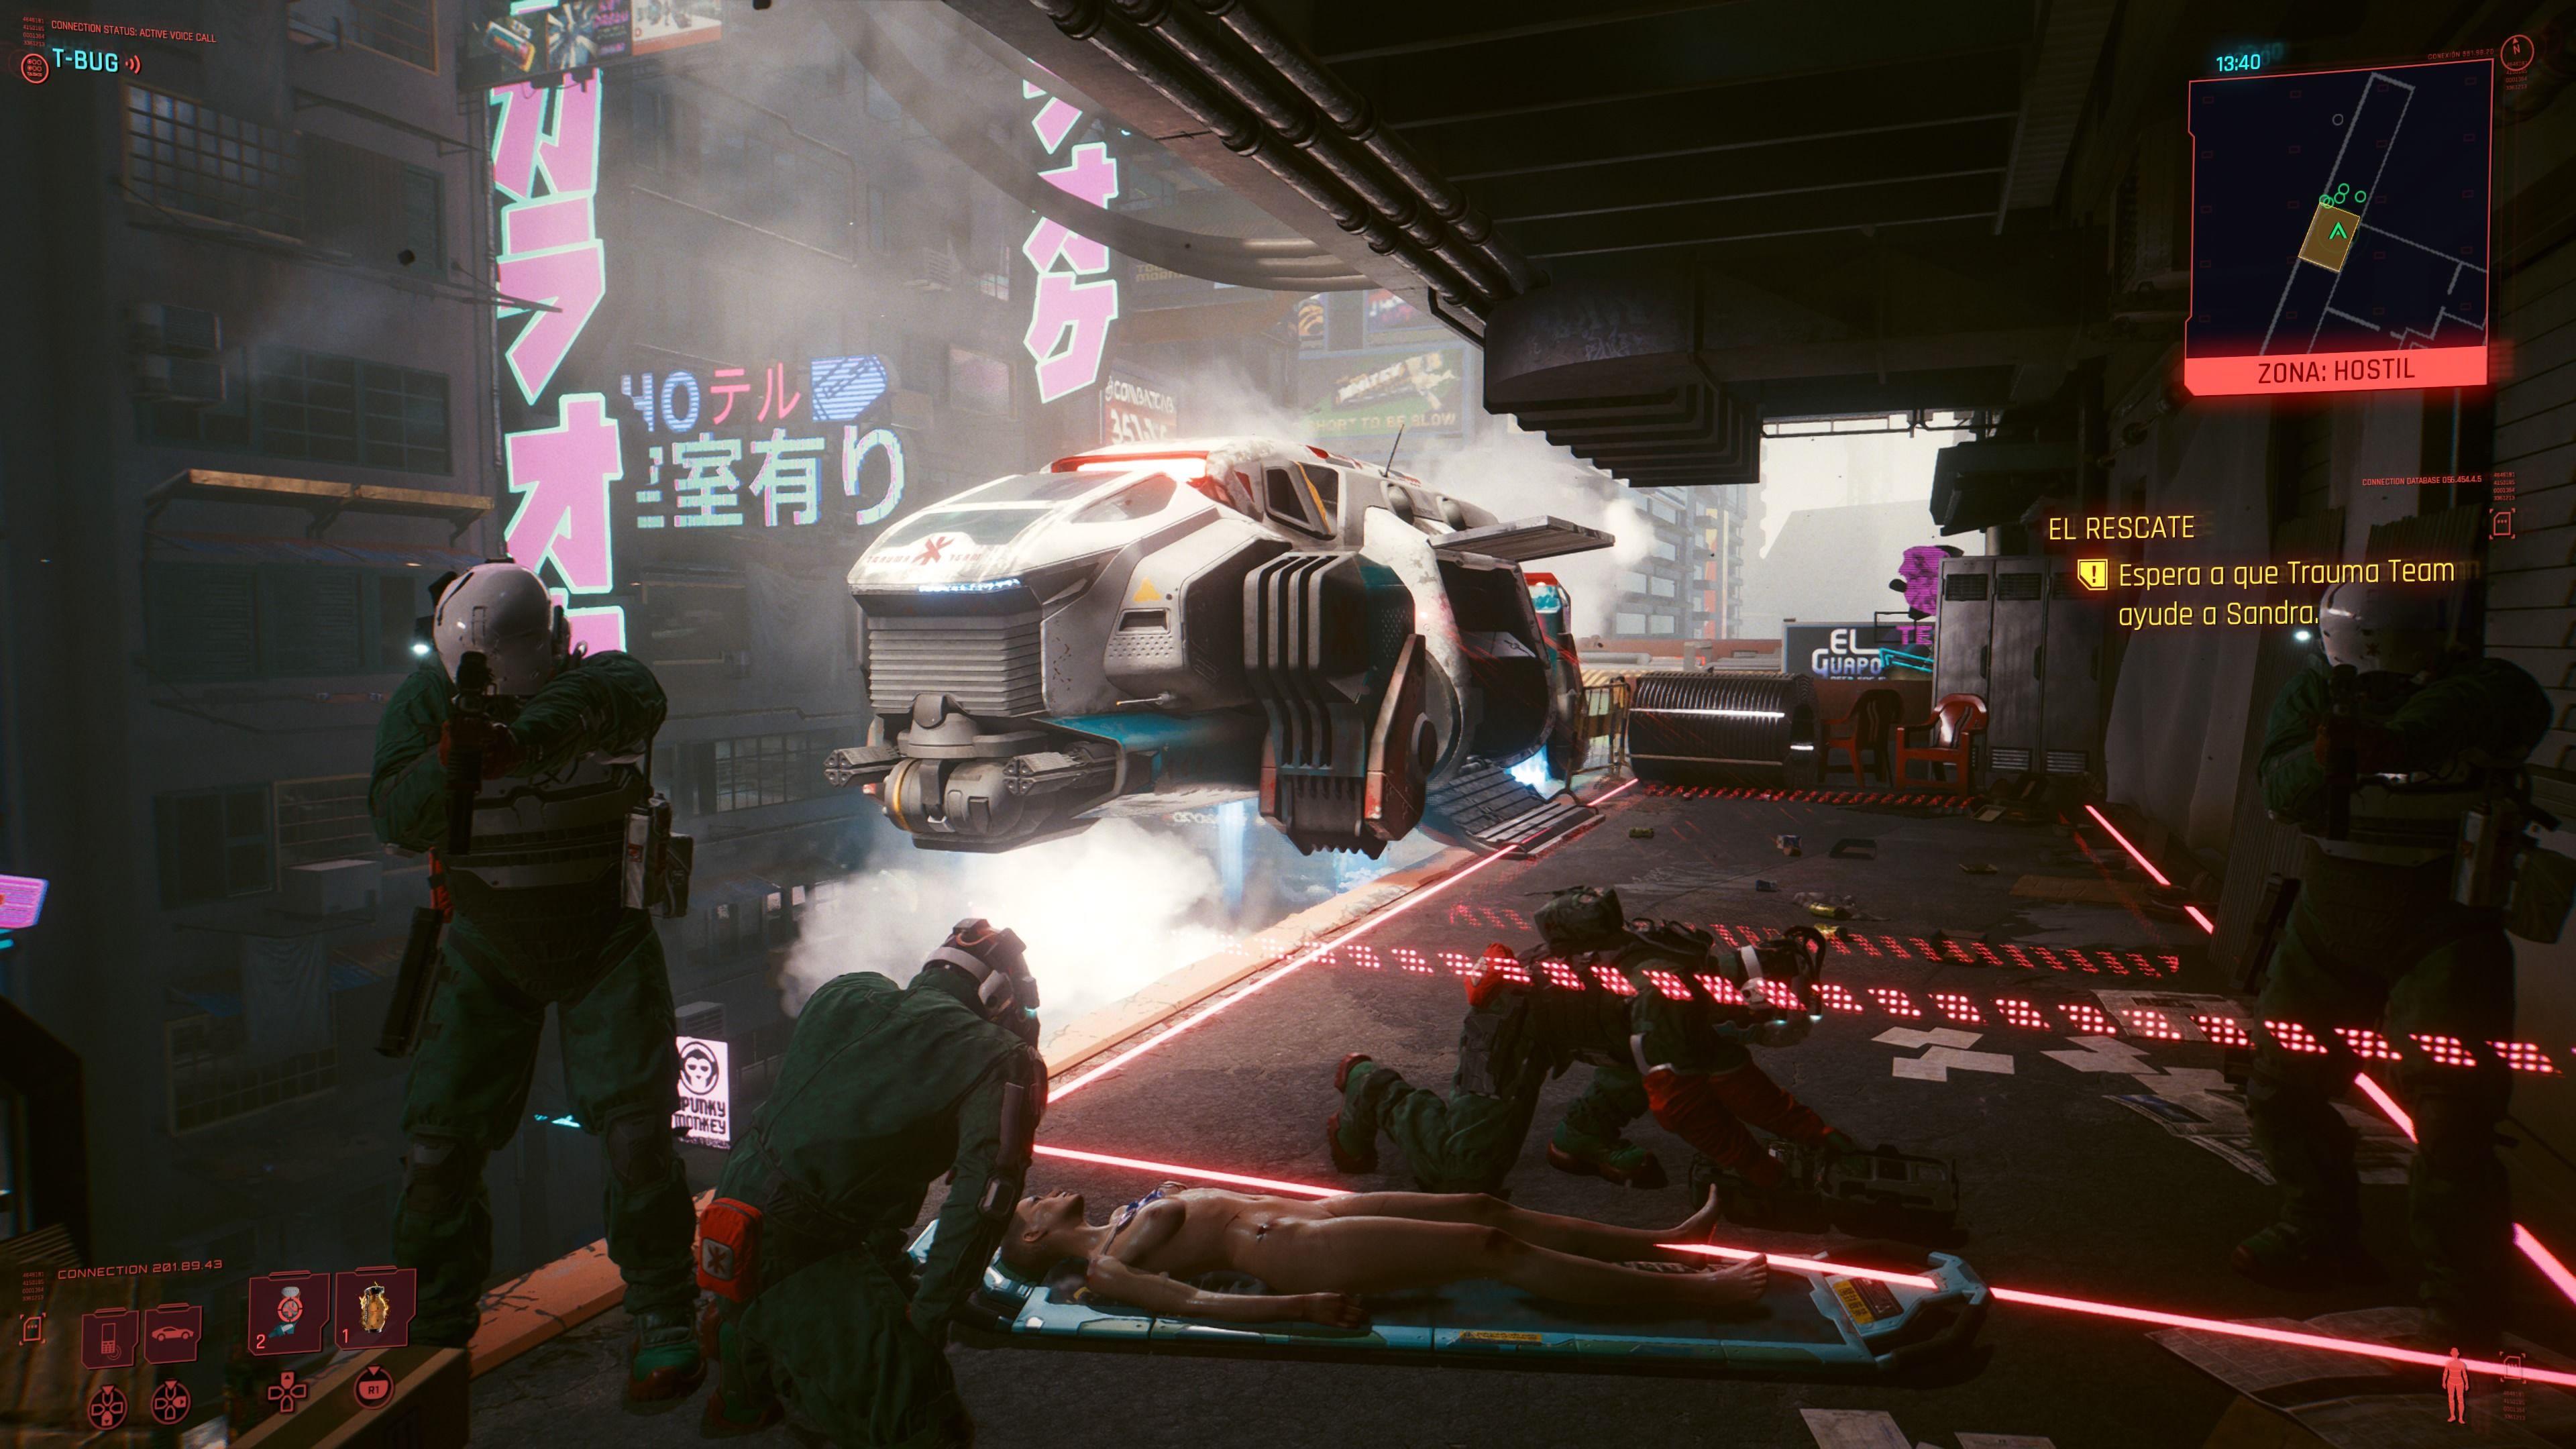 Impresiones de Cyberpunk 2077 en PS5 y Xbox Series X. Merece la pena en la  nueva generación.